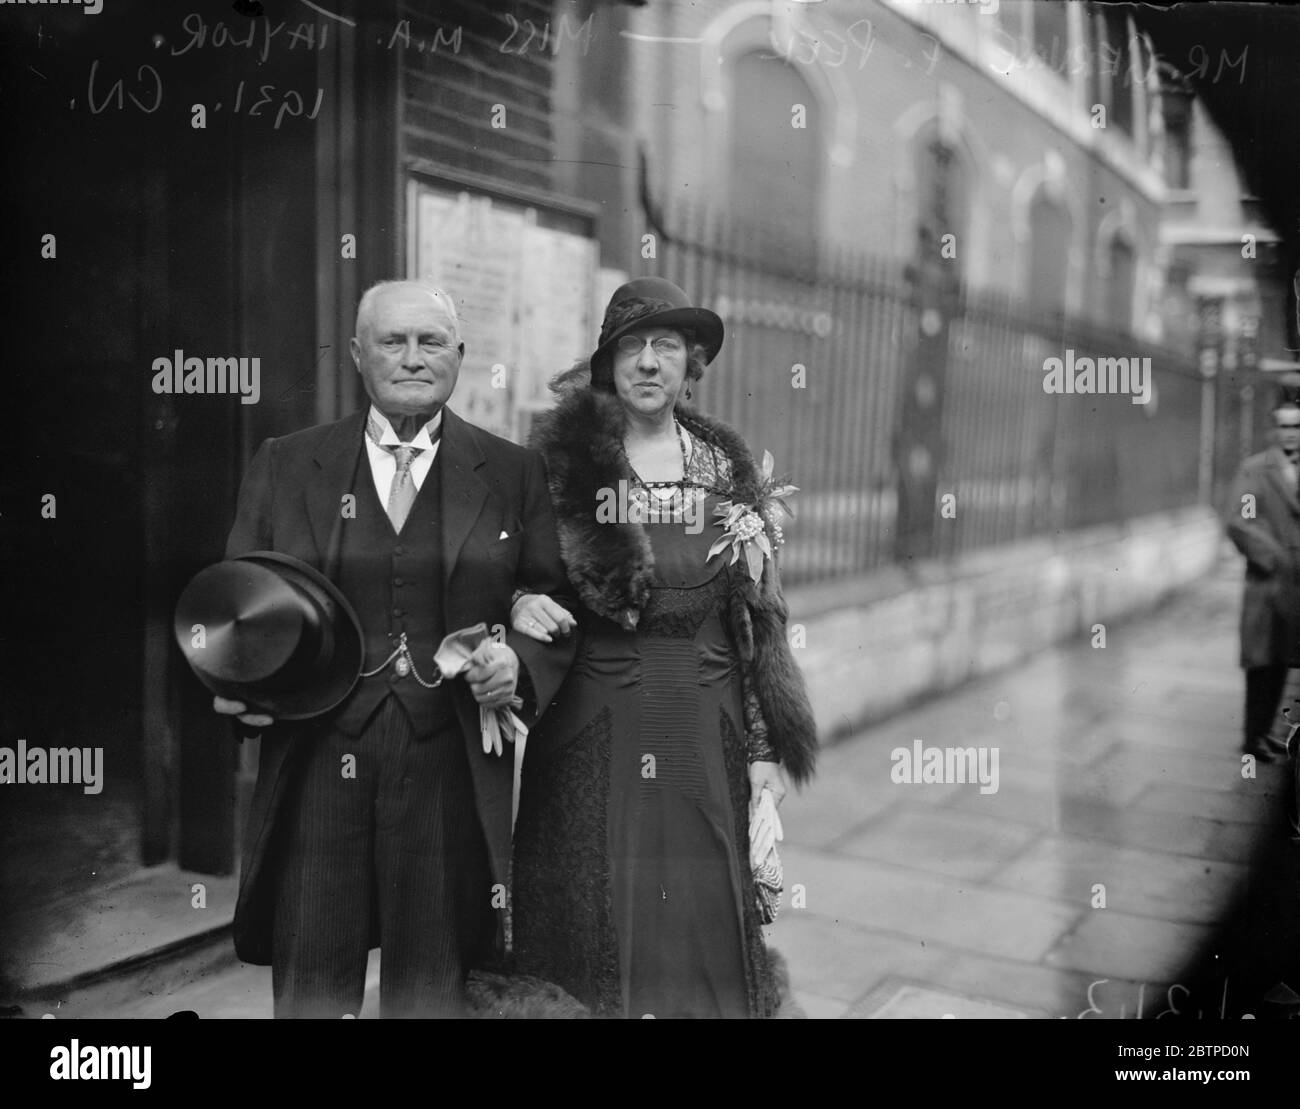 Zeitungsvorsitzender verheiratet. Die Ehe zwischen Herrn Gervase F Peek, dem Vorsitzenden der "Guernsey Press", und Frau M. A. Taylor in St. James, Piccadilly. Die Braut und der Bräutigam nach der Zeremonie. Dezember 1931 Stockfoto